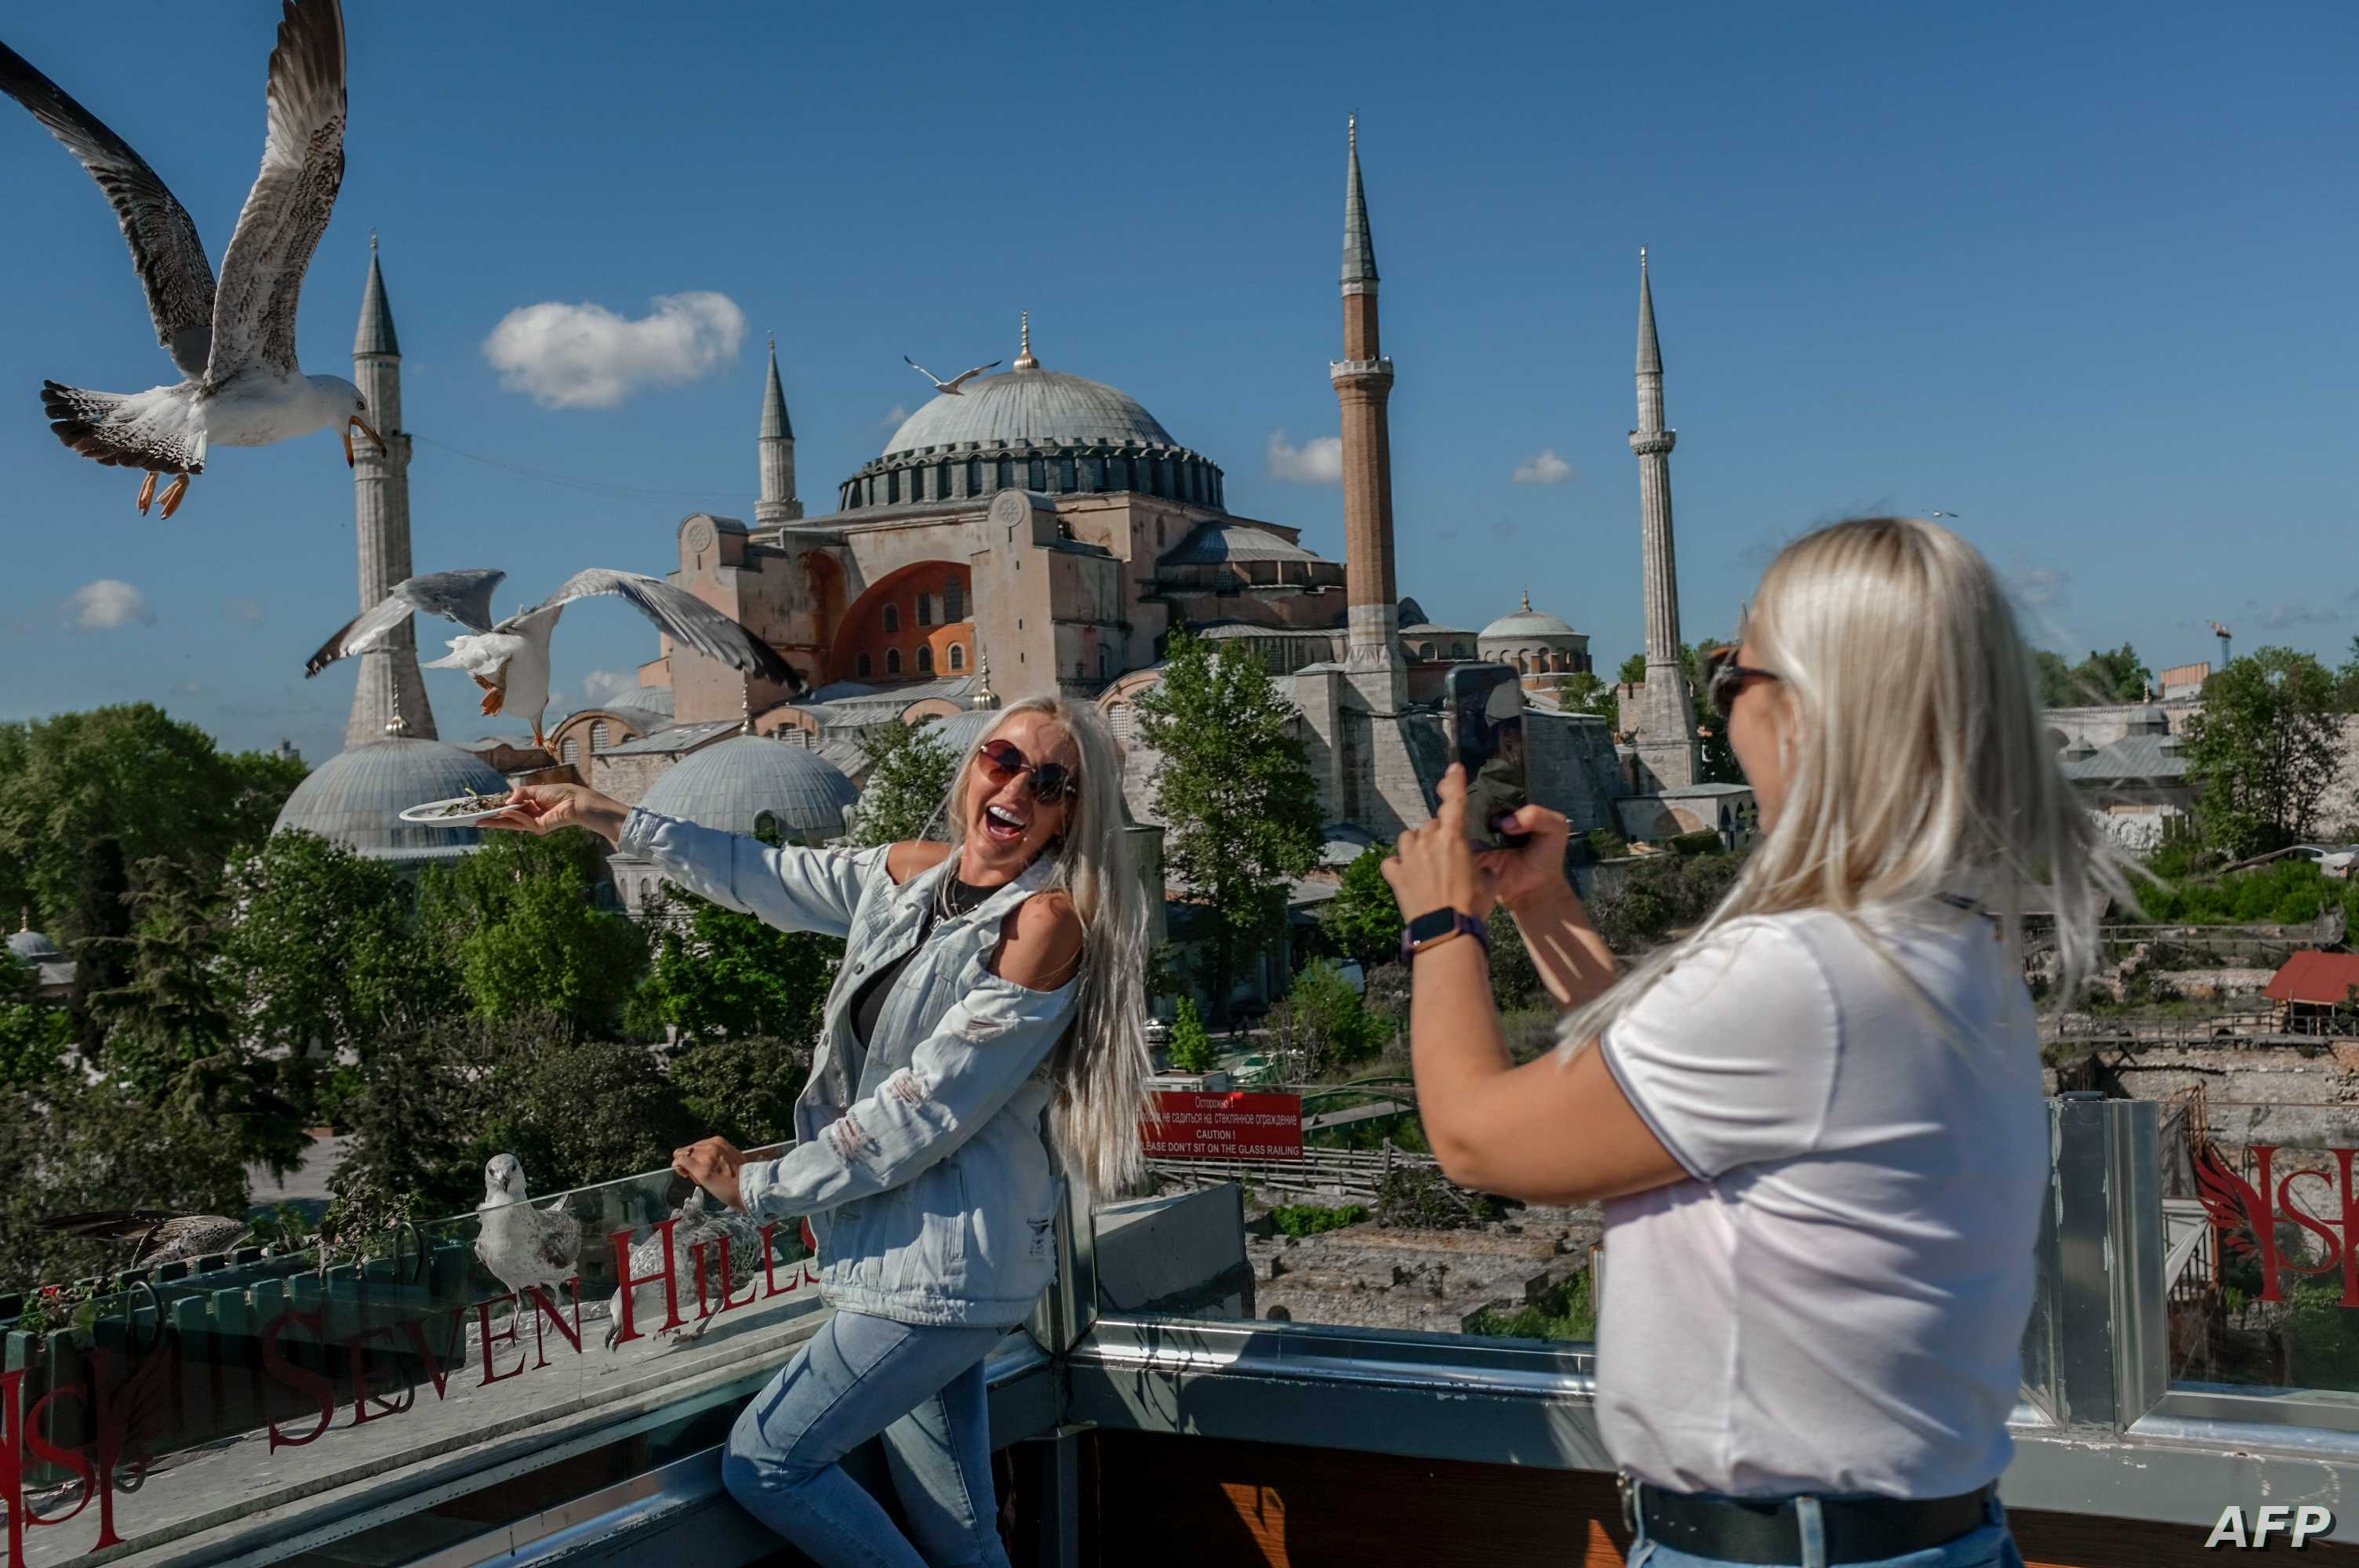 وزير السياحة التركي: الزوار العرب في طليعة أولوياتنا